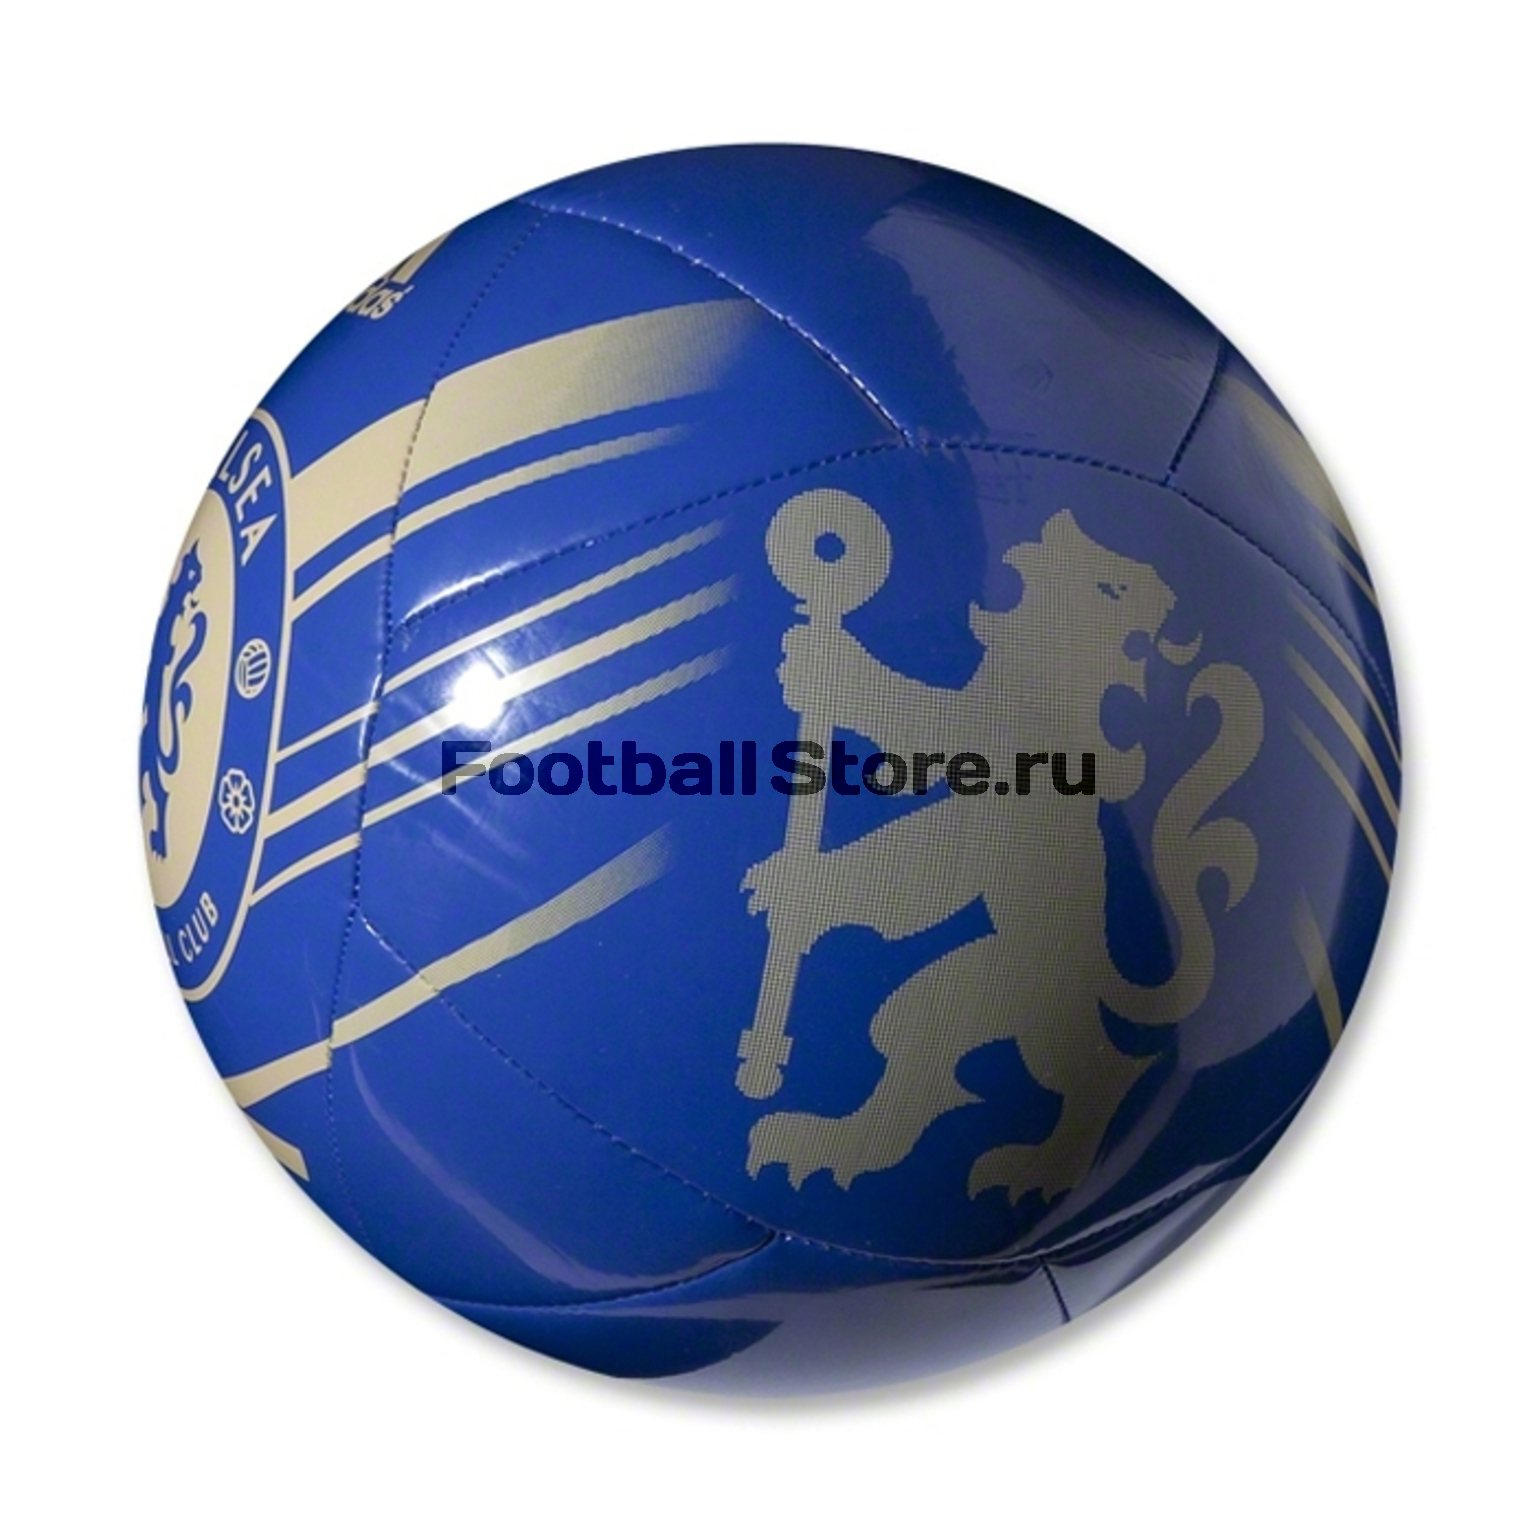 Мяч футбольный Adidas chelsea fc